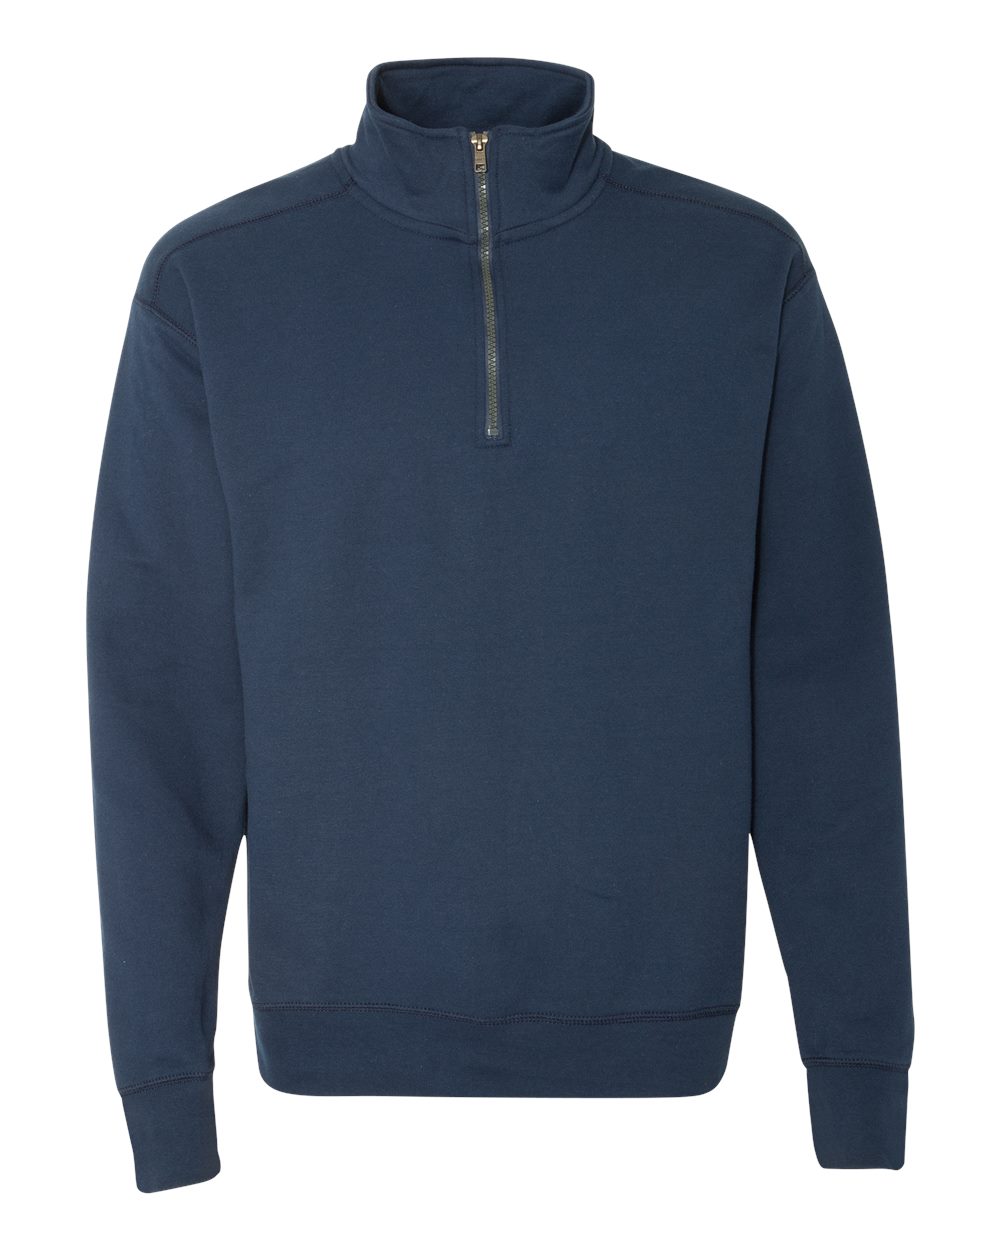 Men's Big Nano Premium Soft Lightweight Fleece Full Zip Hoodie - image 1 of 2